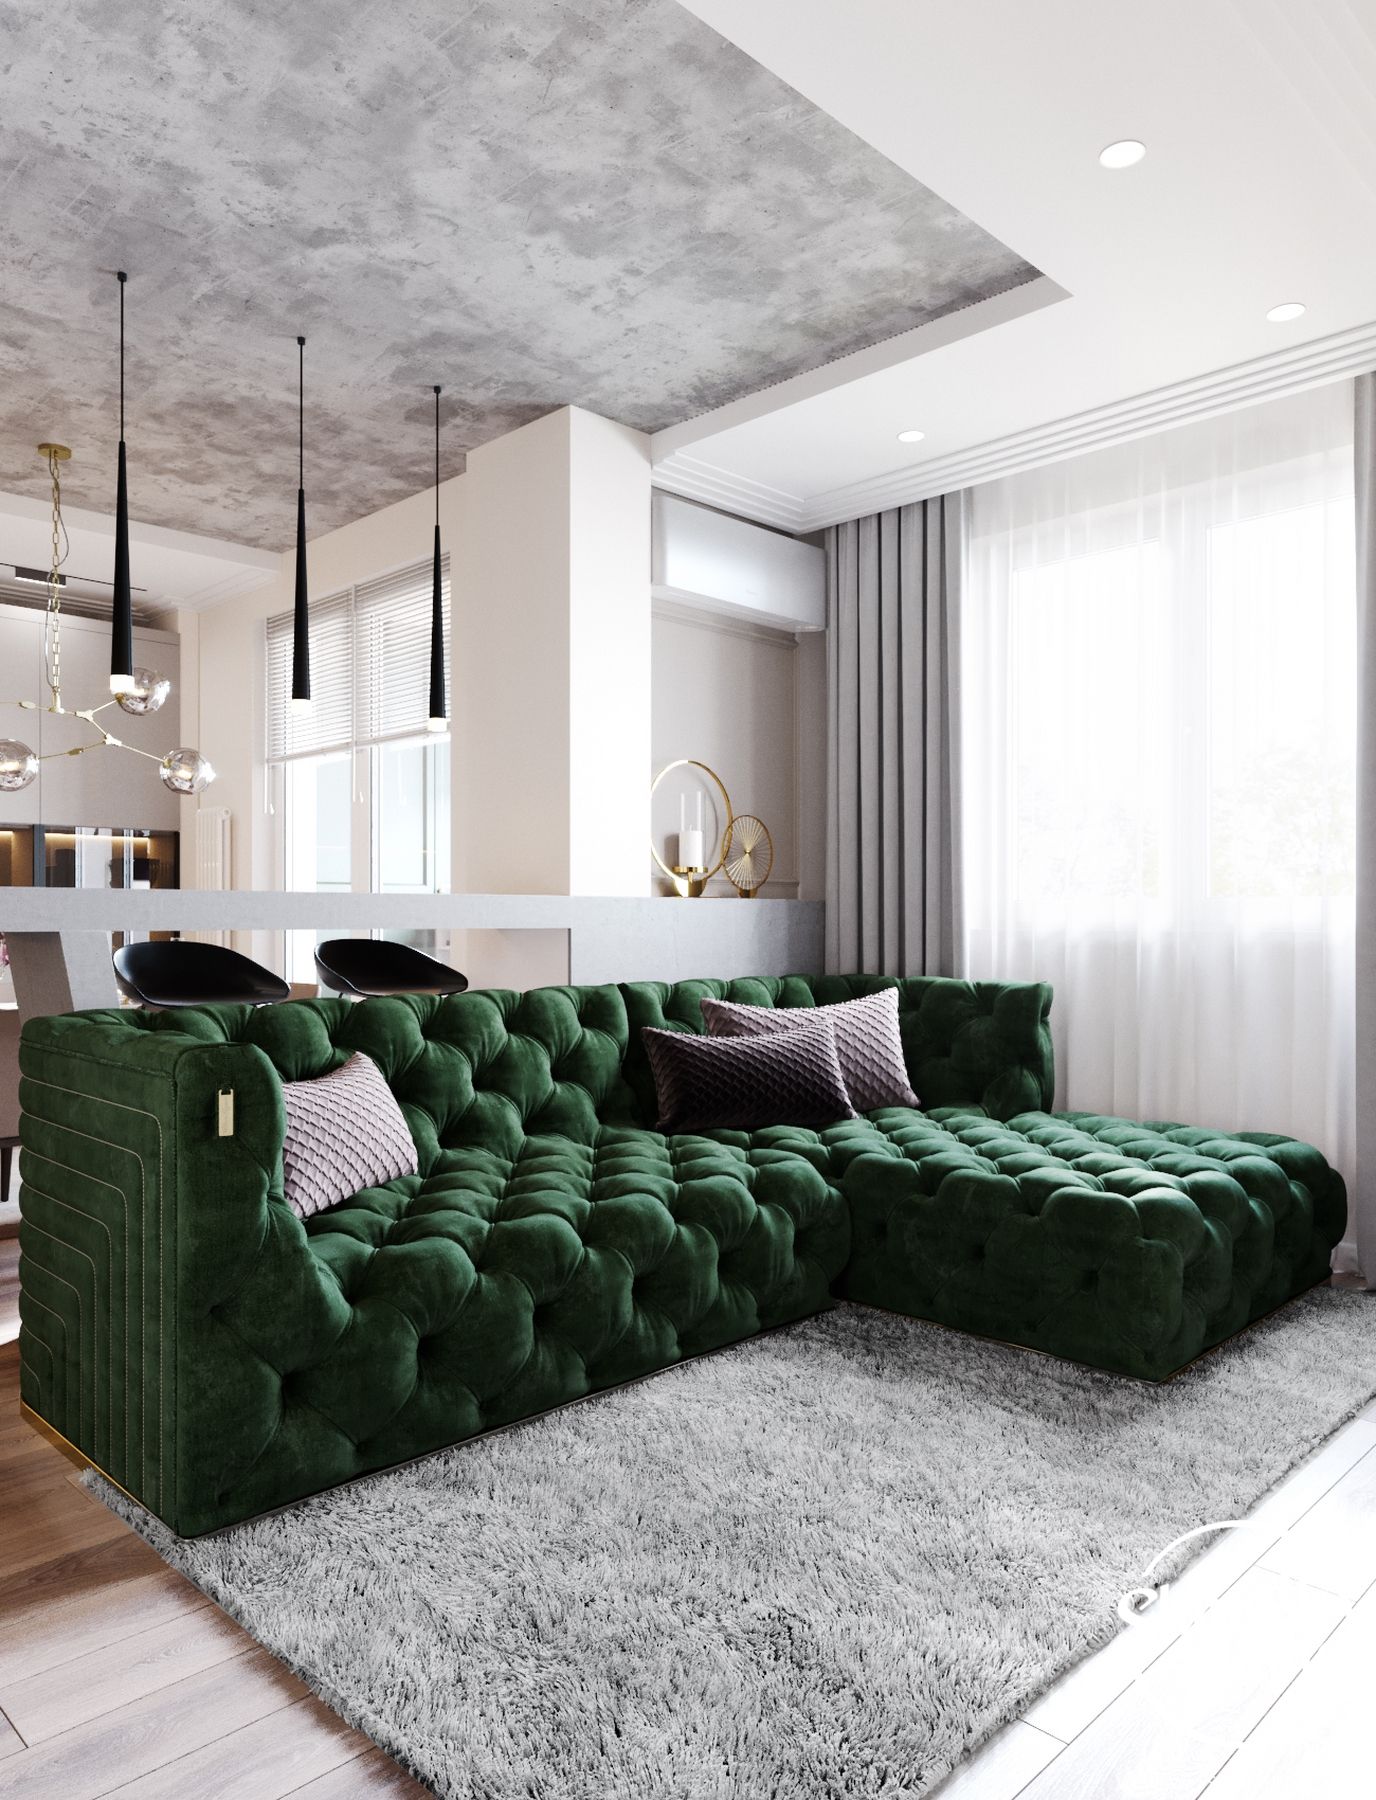 Дизайн гостиной с ярким диваном фото